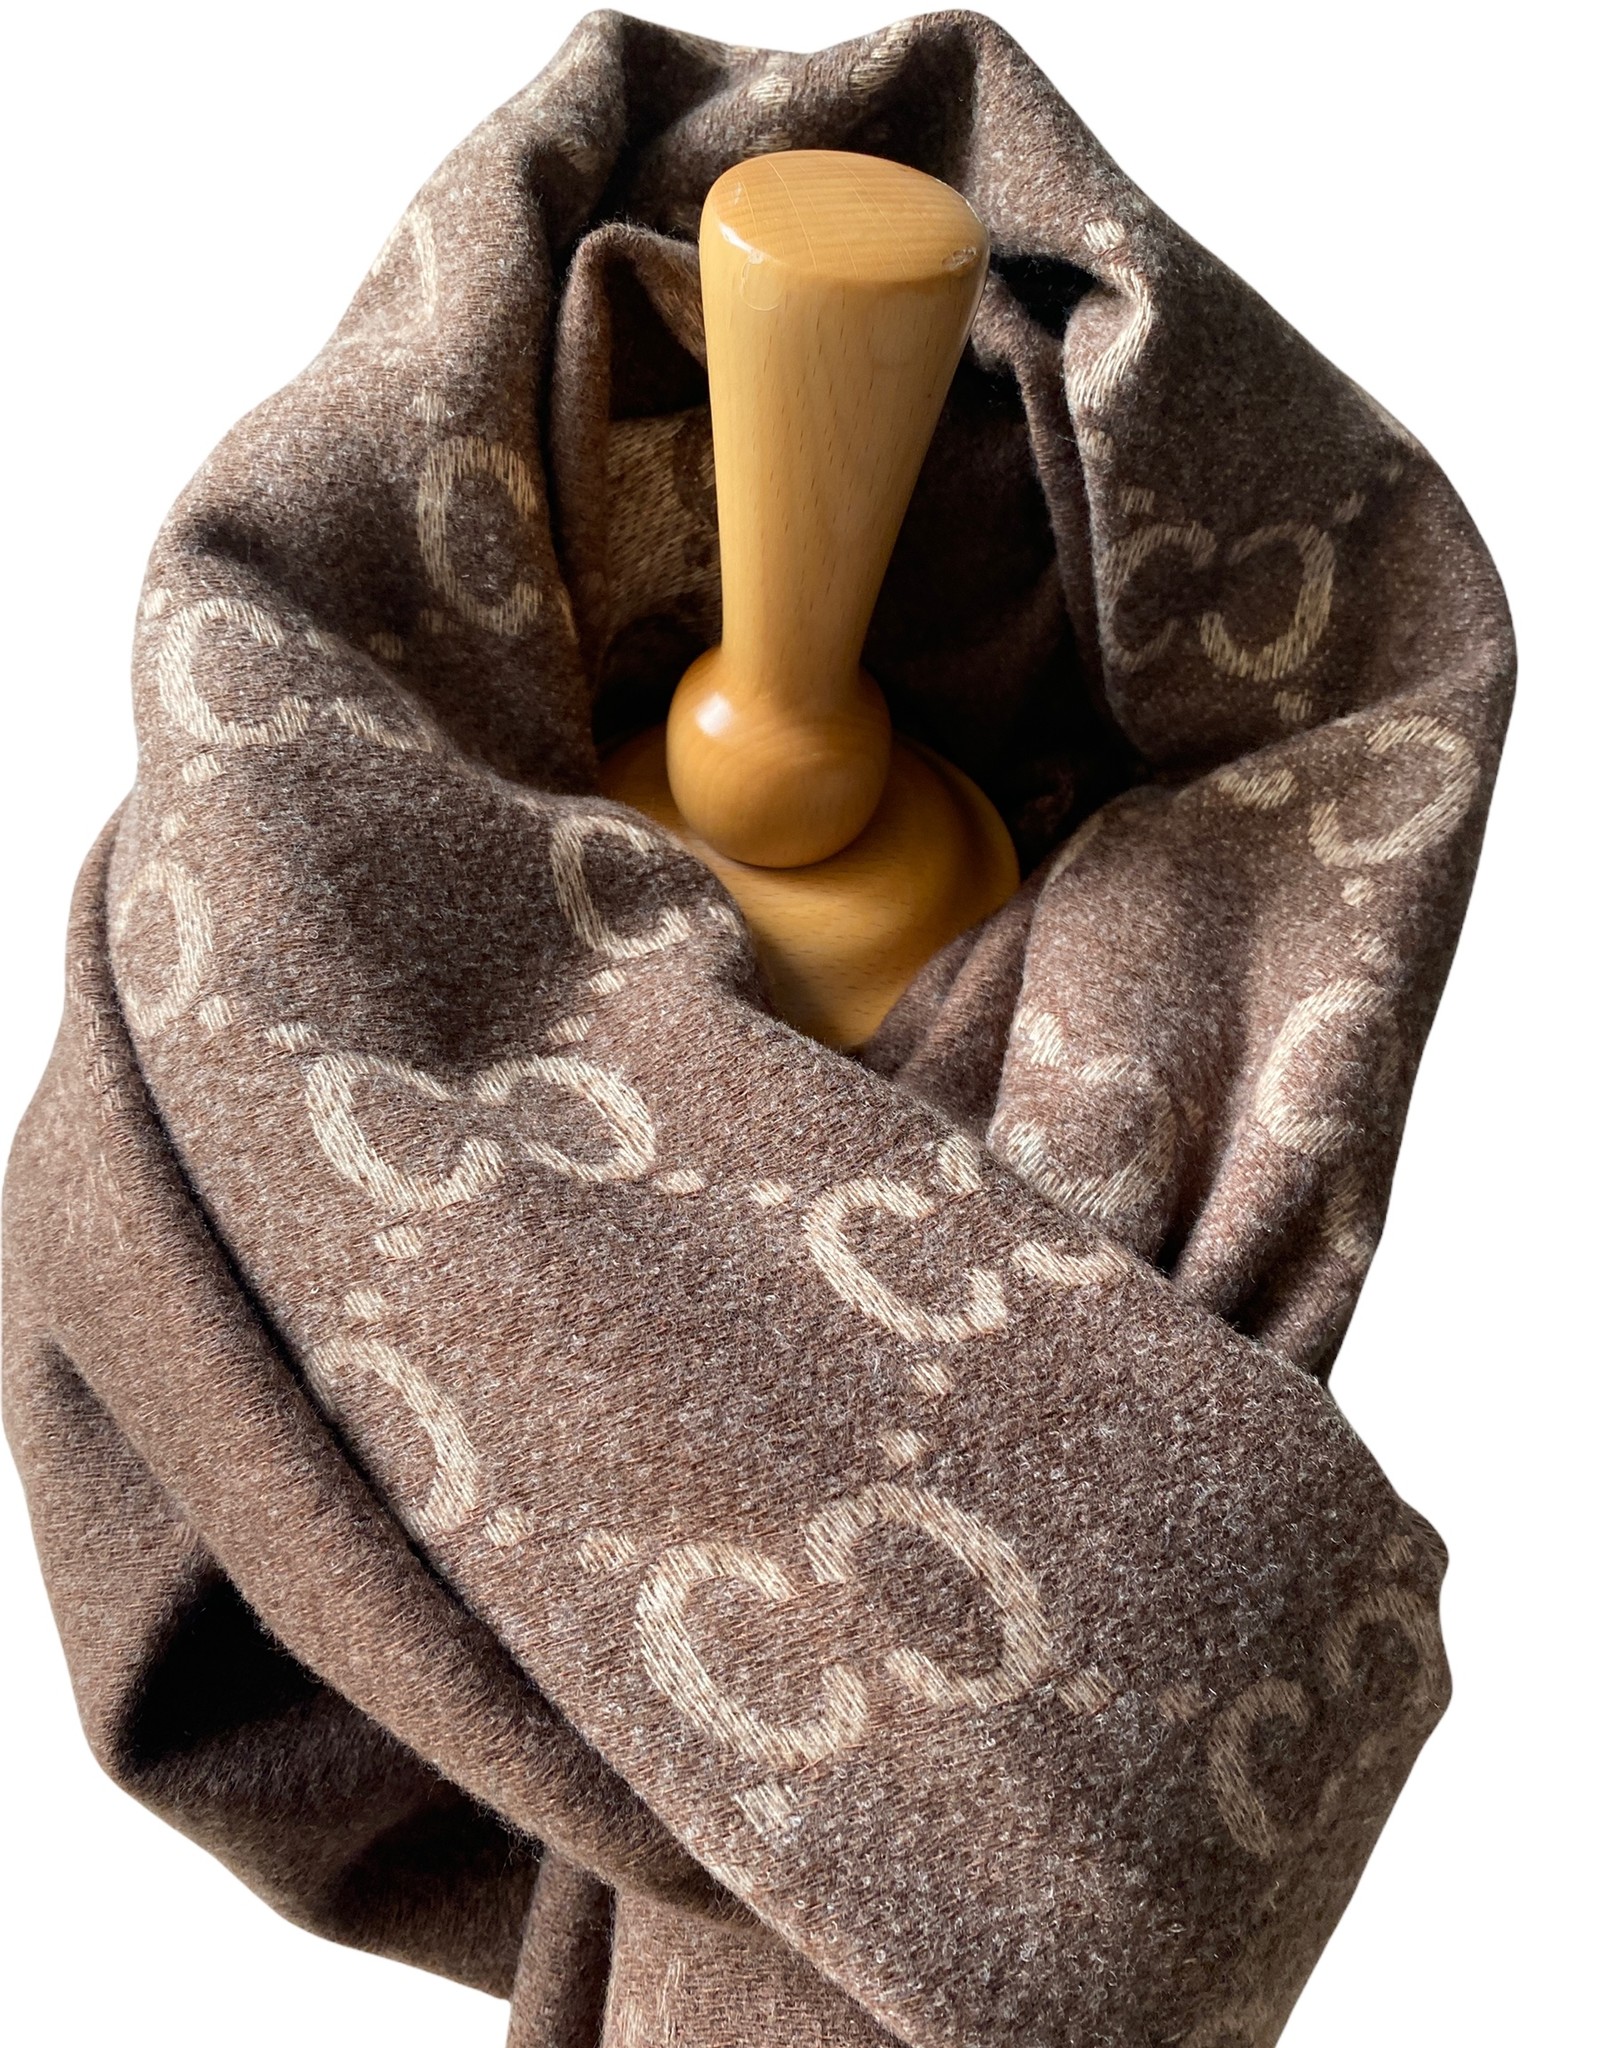 Zachte sjaal met franjes, brand logo, bruin/beige tinten